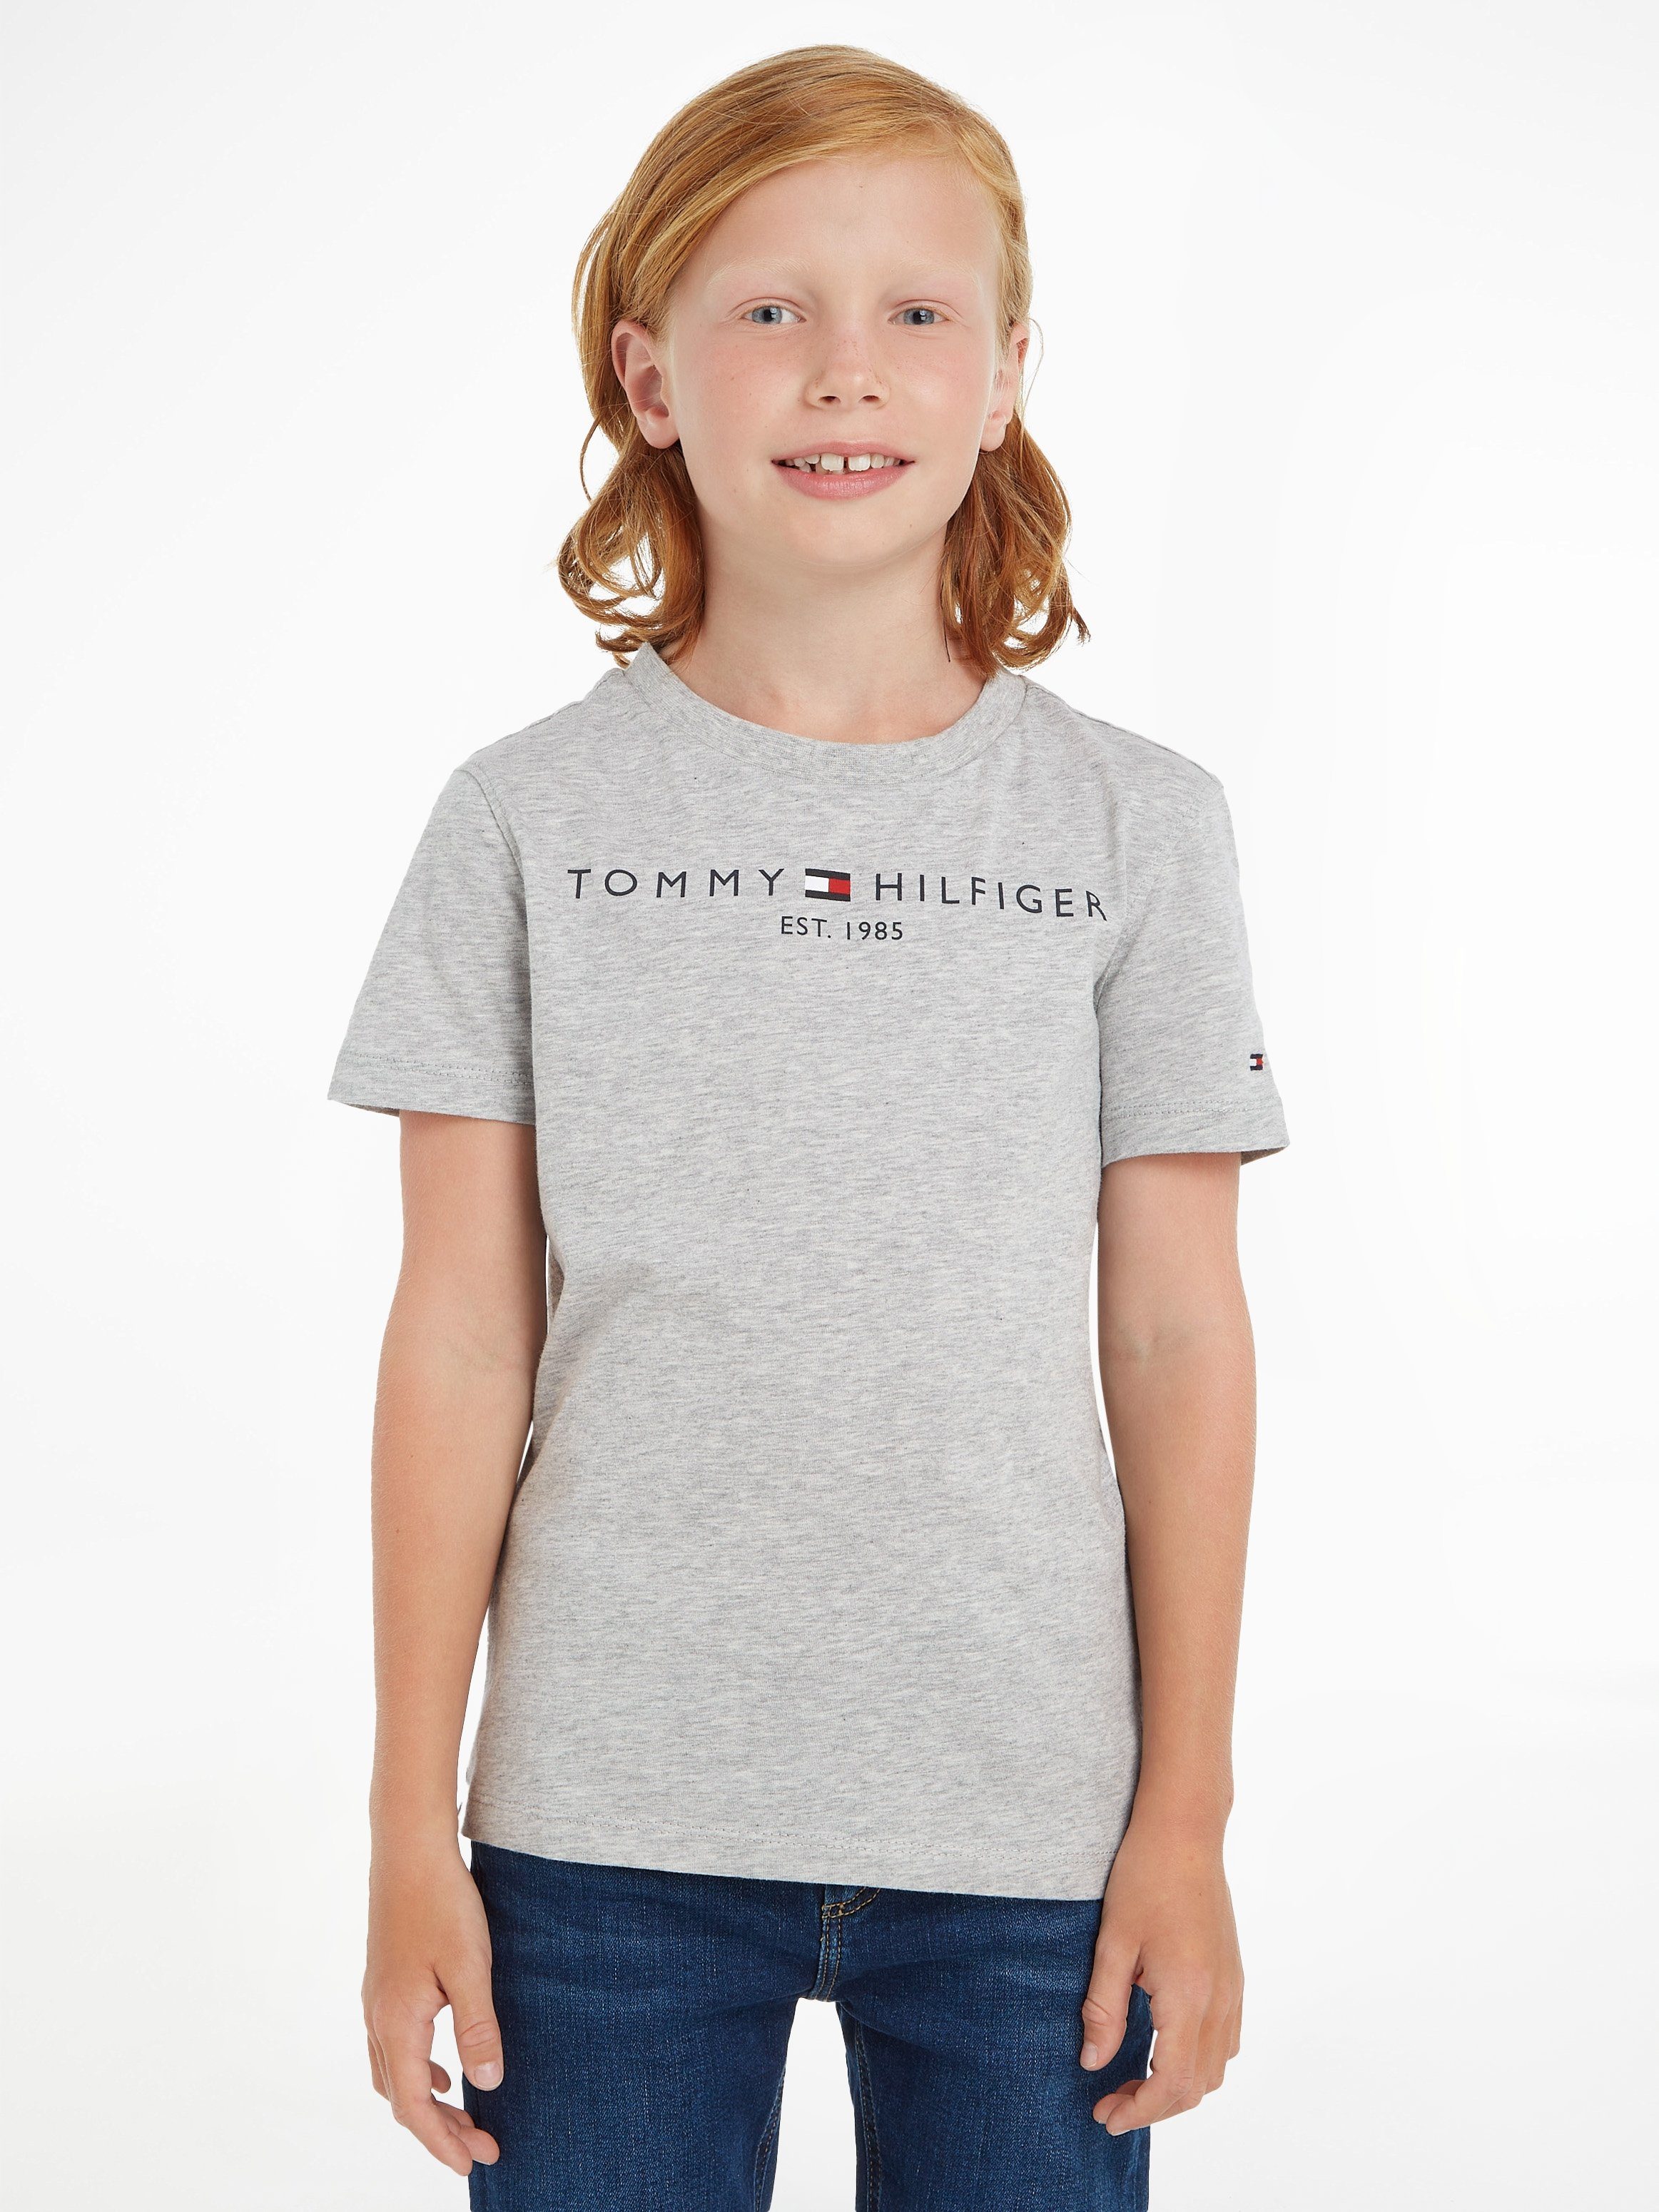 Hilfiger Jungen ESSENTIAL MiniMe,für TEE Junior Mädchen Kids T-Shirt und Kinder Tommy